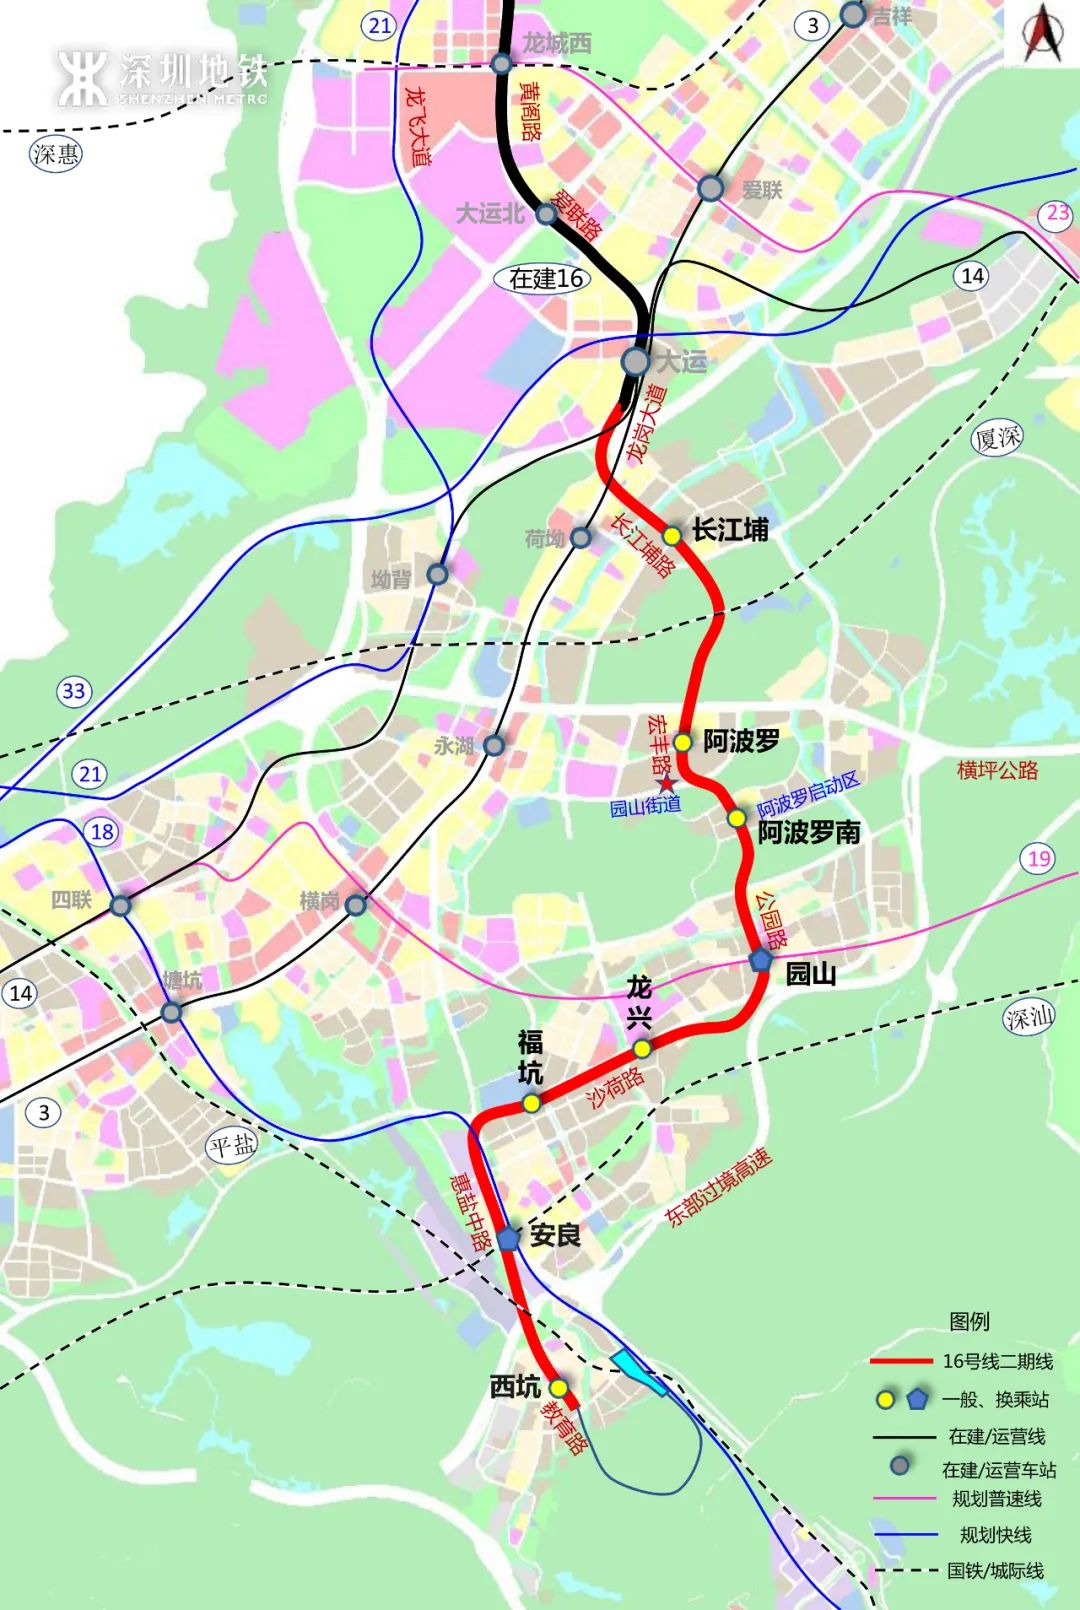 深圳地铁5线开工 预计2025年陆续通车